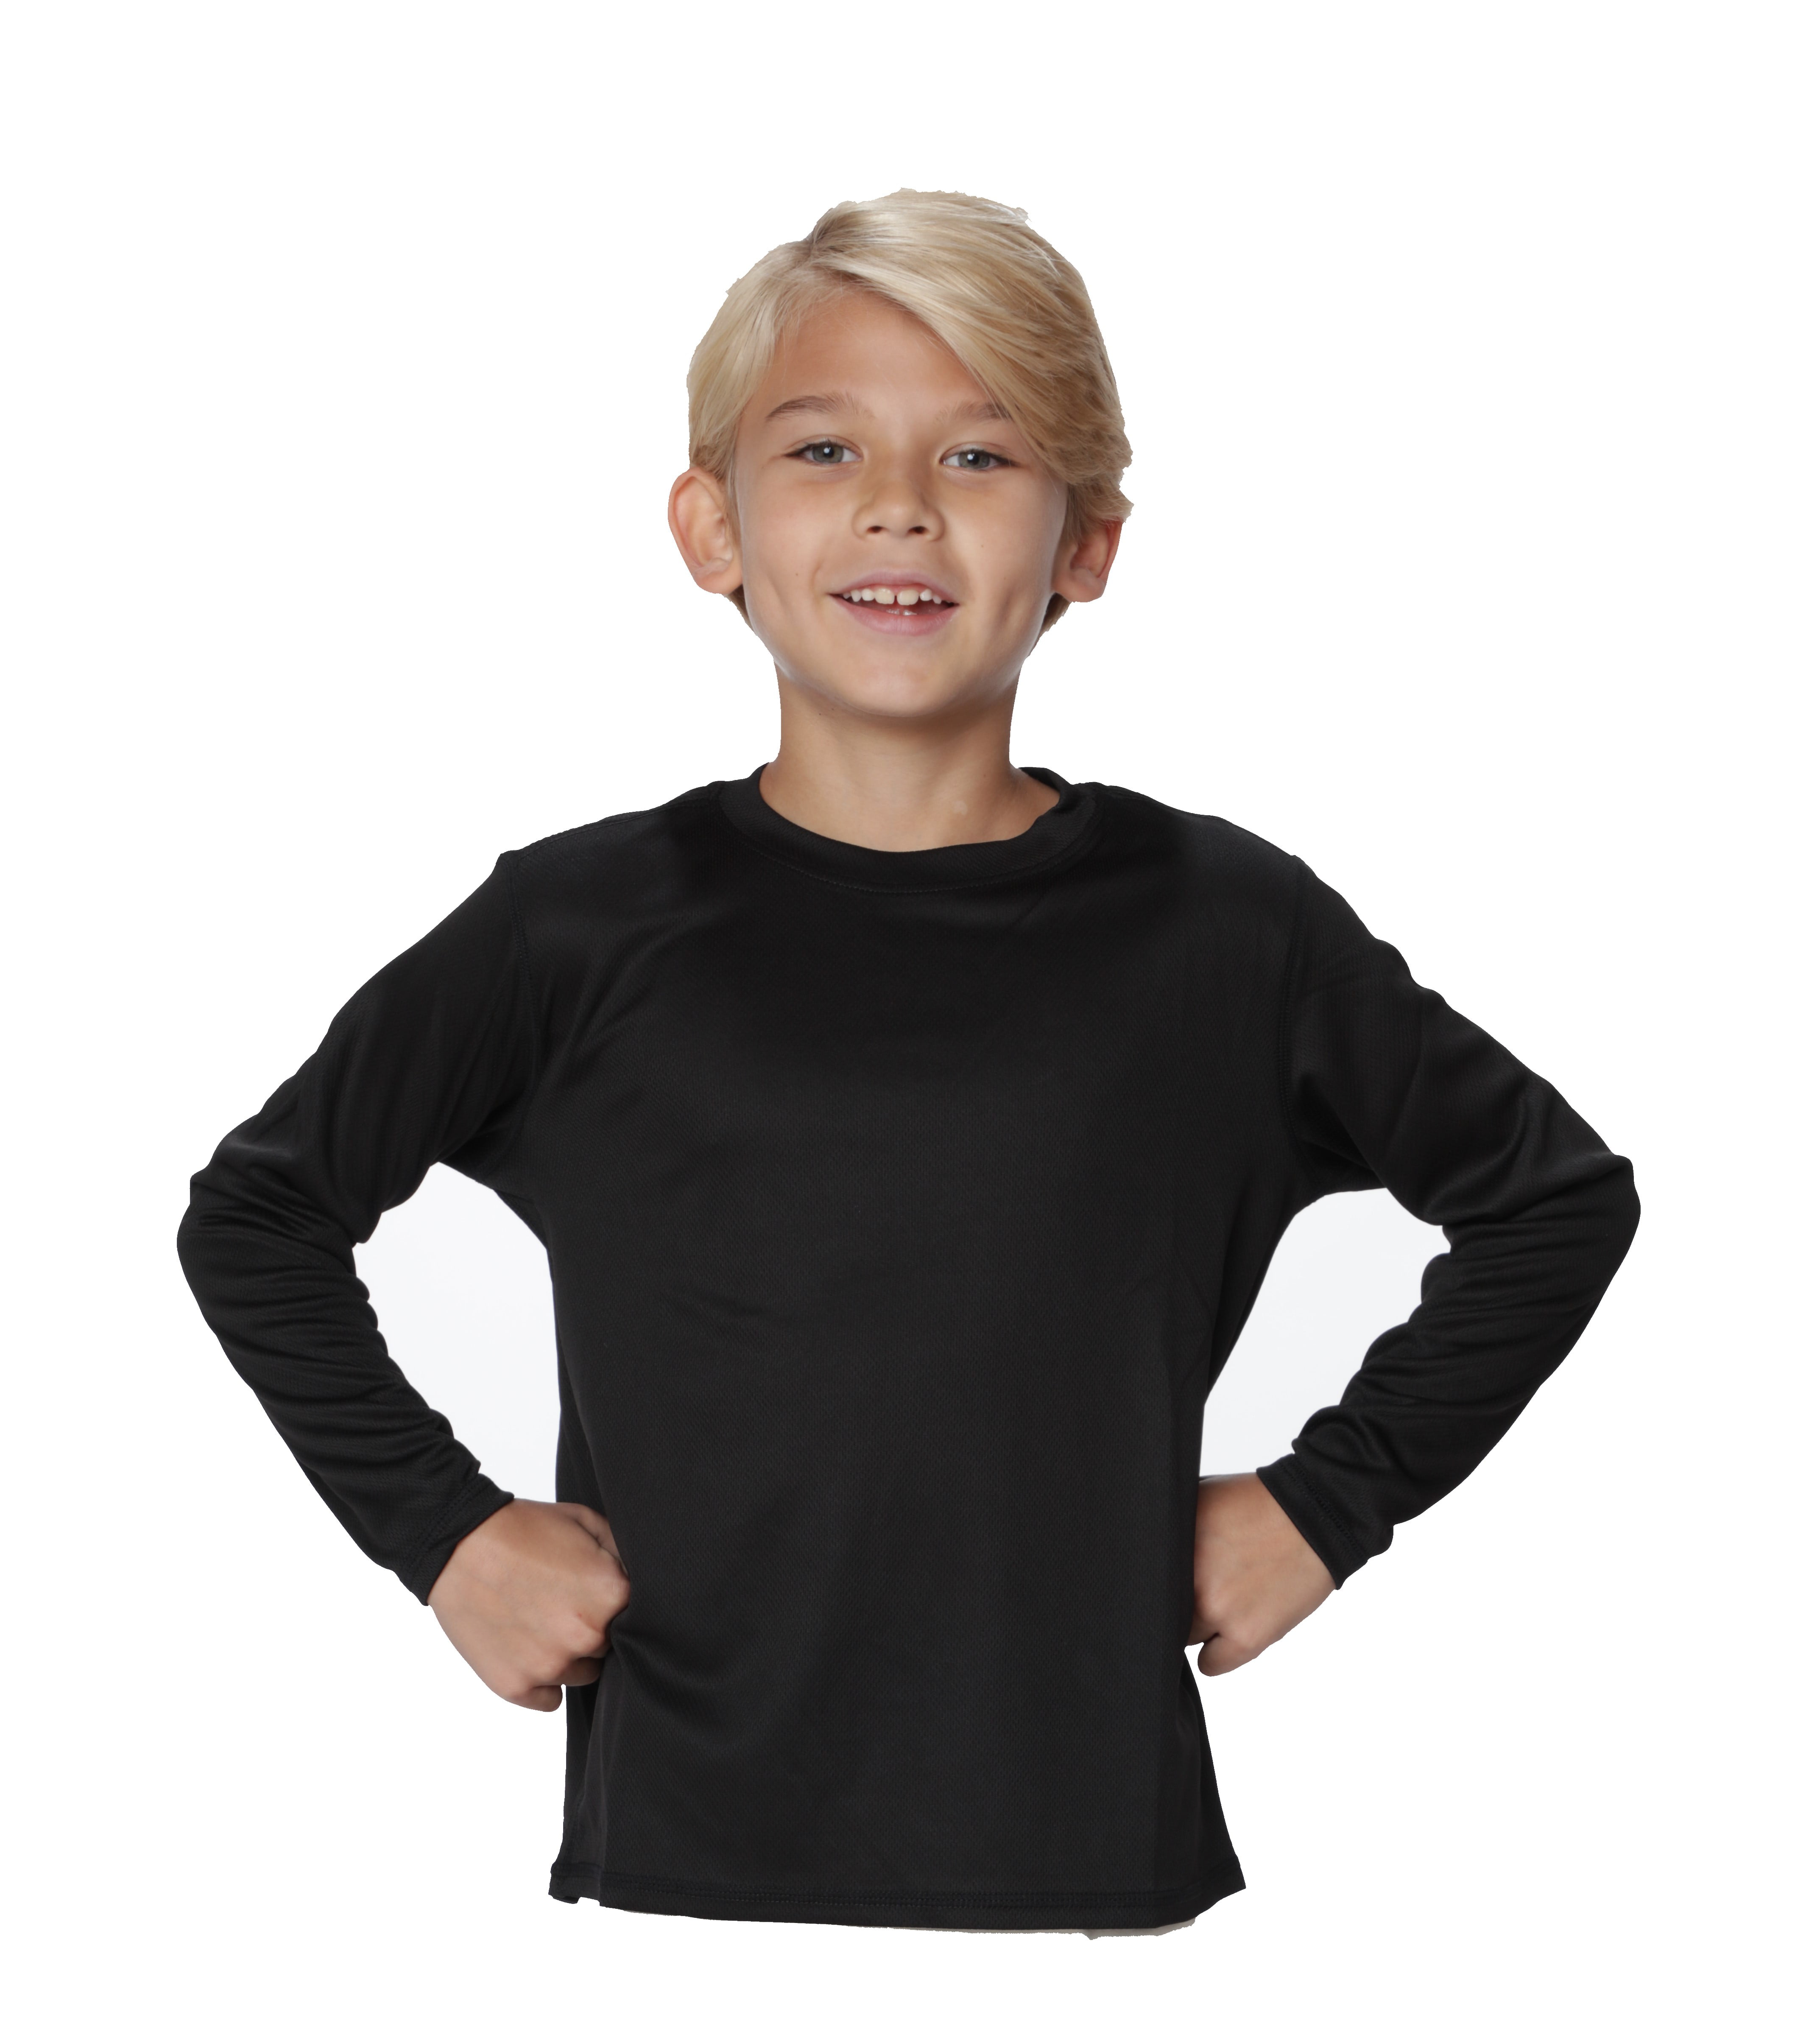 Boys size 8 Sony PLAYSTATION black Long sleeve rash vest top rashie  NEW UPF50 